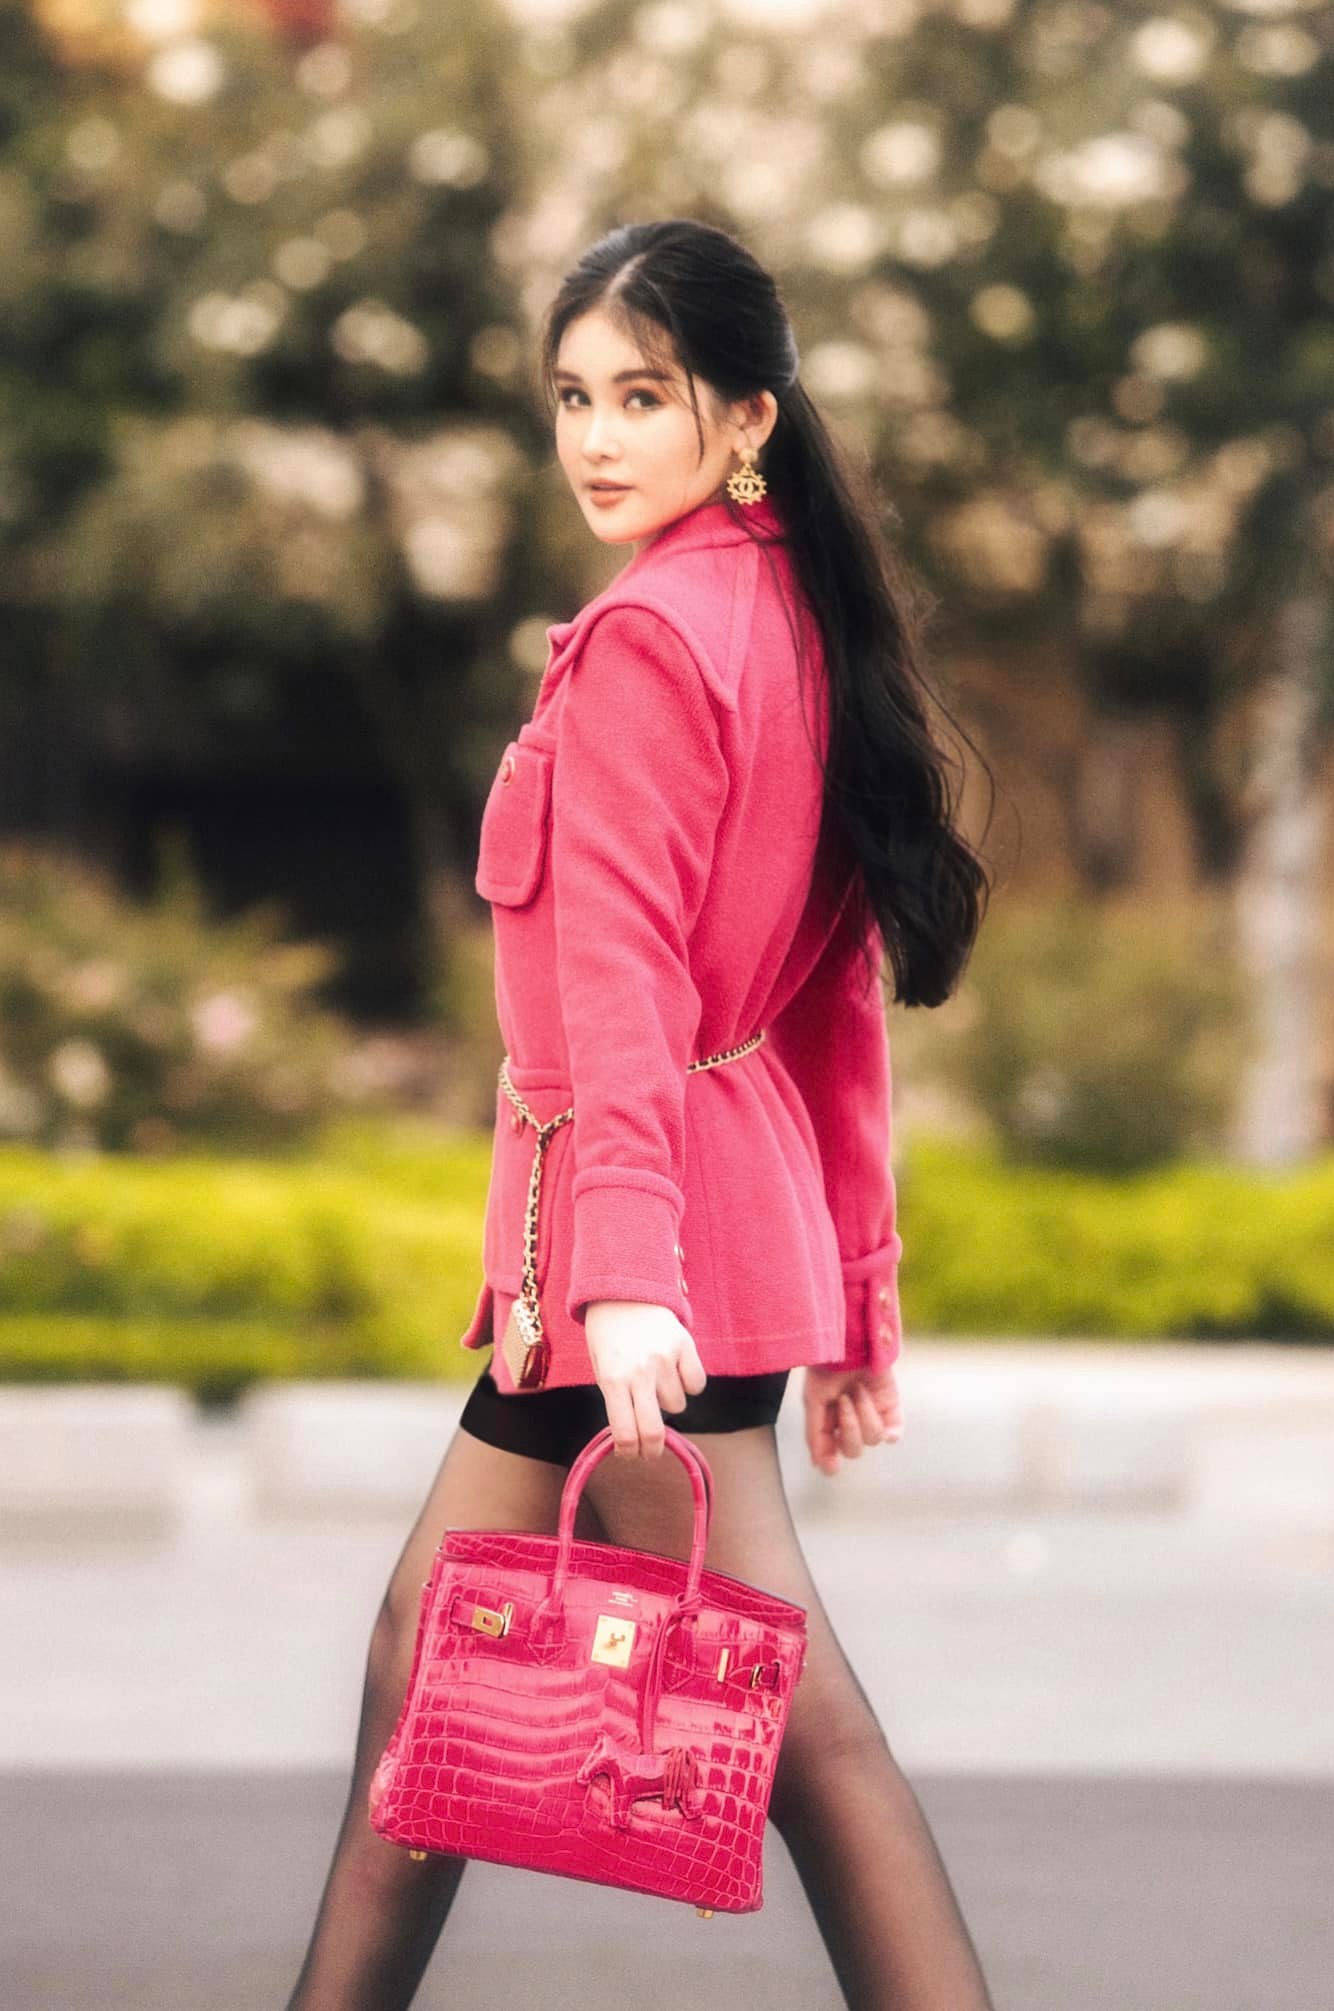 Trong những hình ảnh mới nhất được đăng tải trên trang cá nhân, nàng hậu diện outfit sành điệu với áo khoác dạ màu hồng cánh sen ngọt ngào, ấm áp.